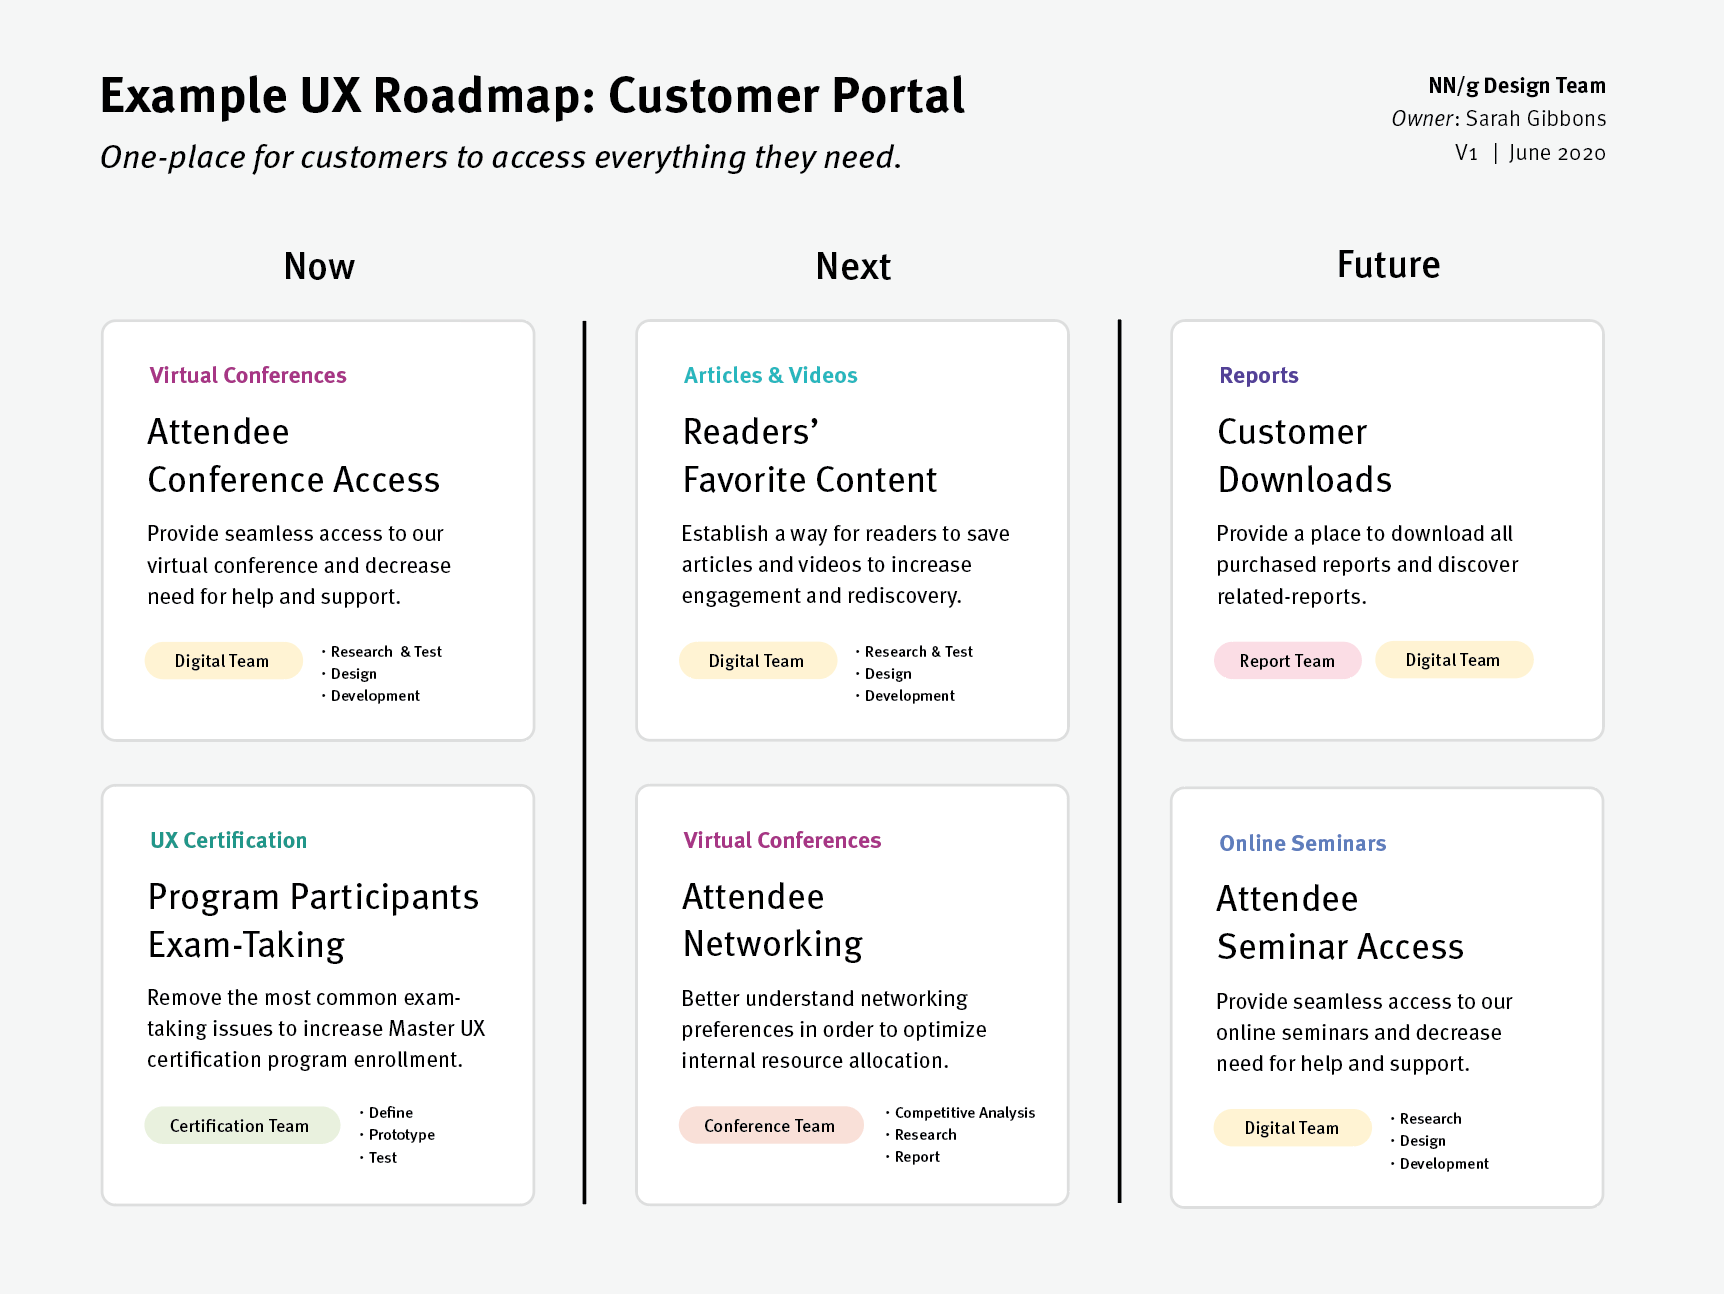 Exemple de Roadmap UX